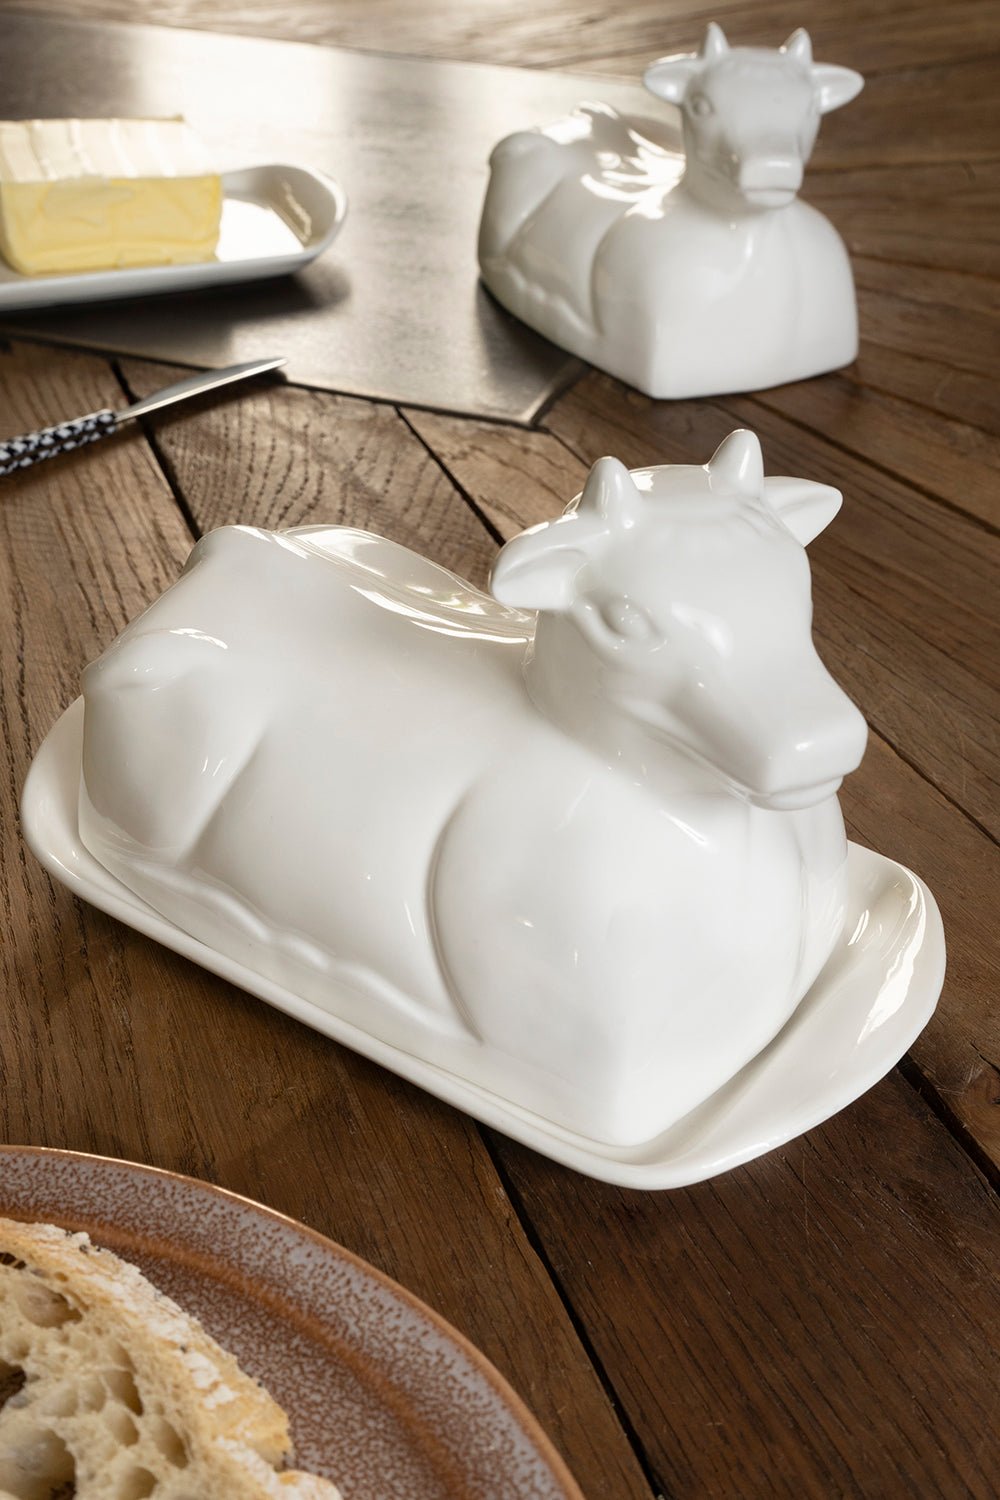 Mantequillera Con Diseño De Vaca De Porcelana Blanca - Cristina Oria